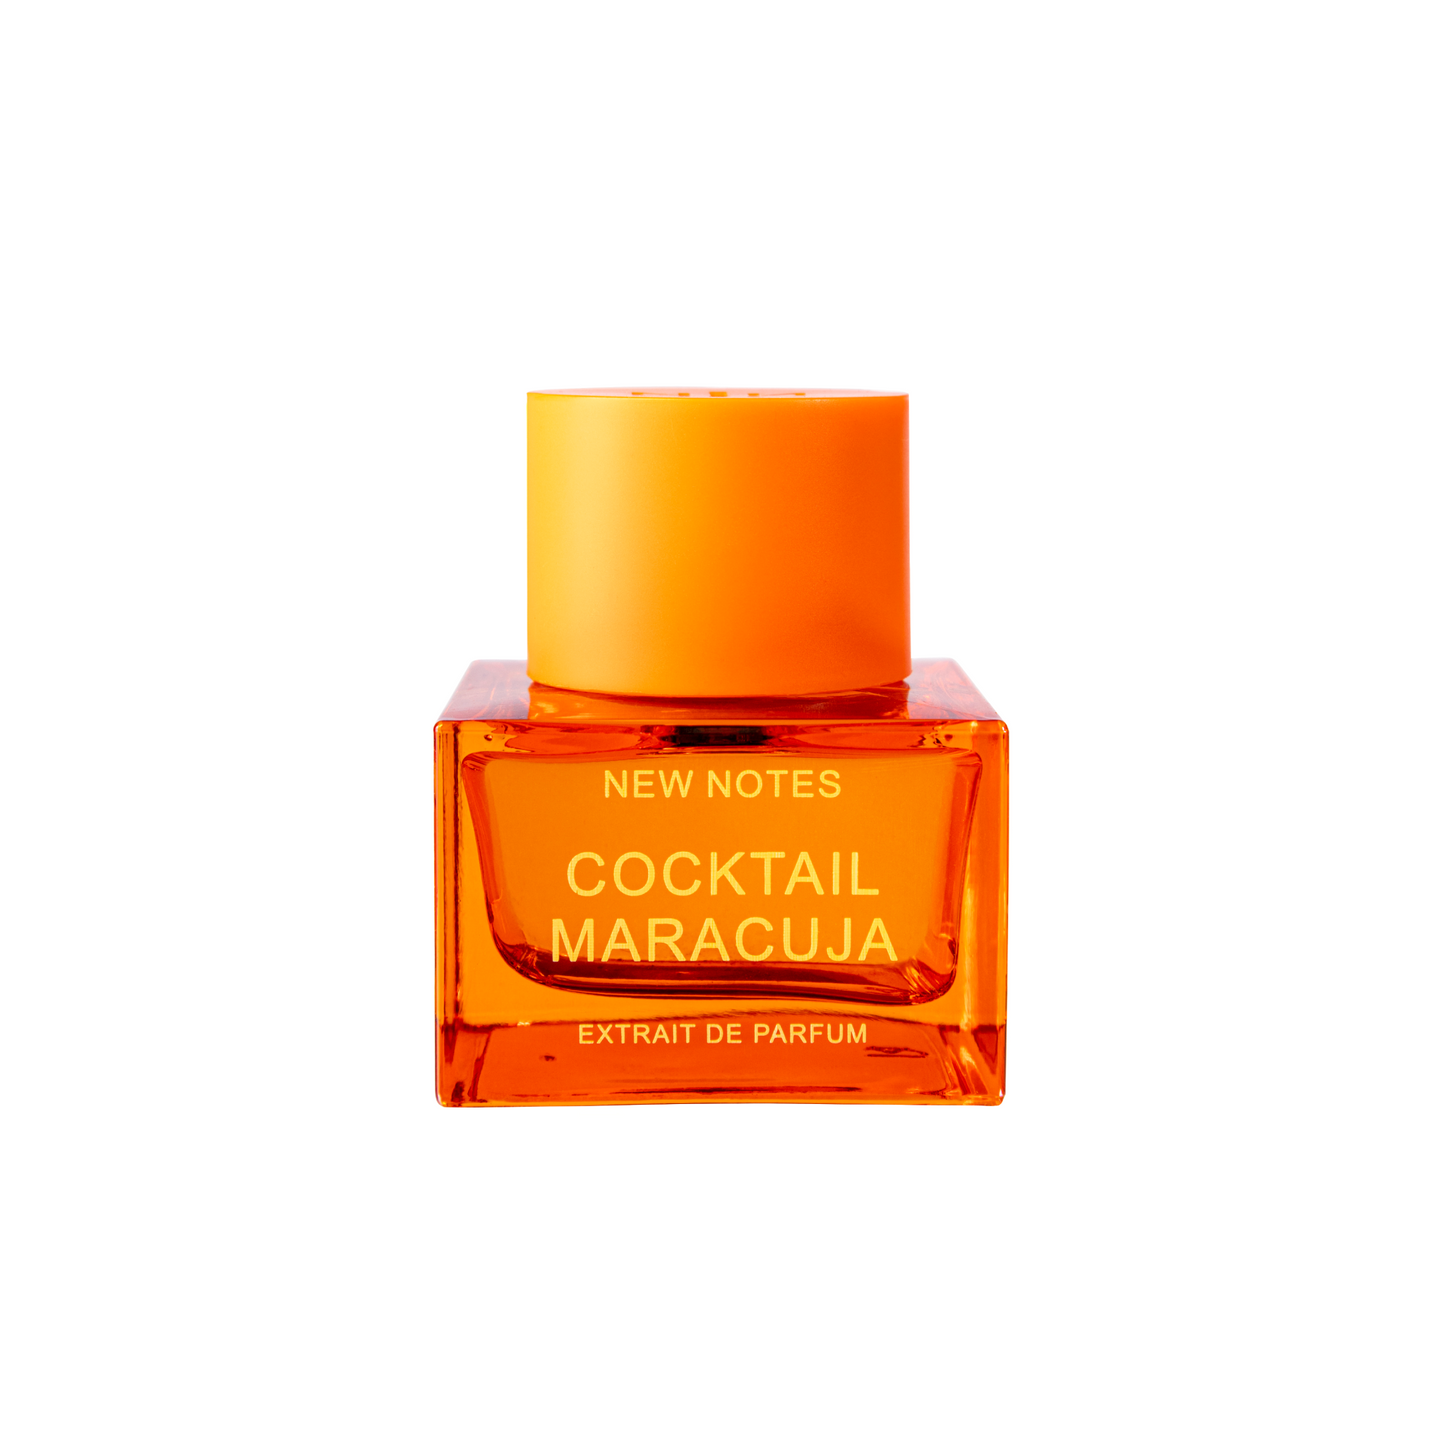 Cocktail Maracuja Extrait de Parfum